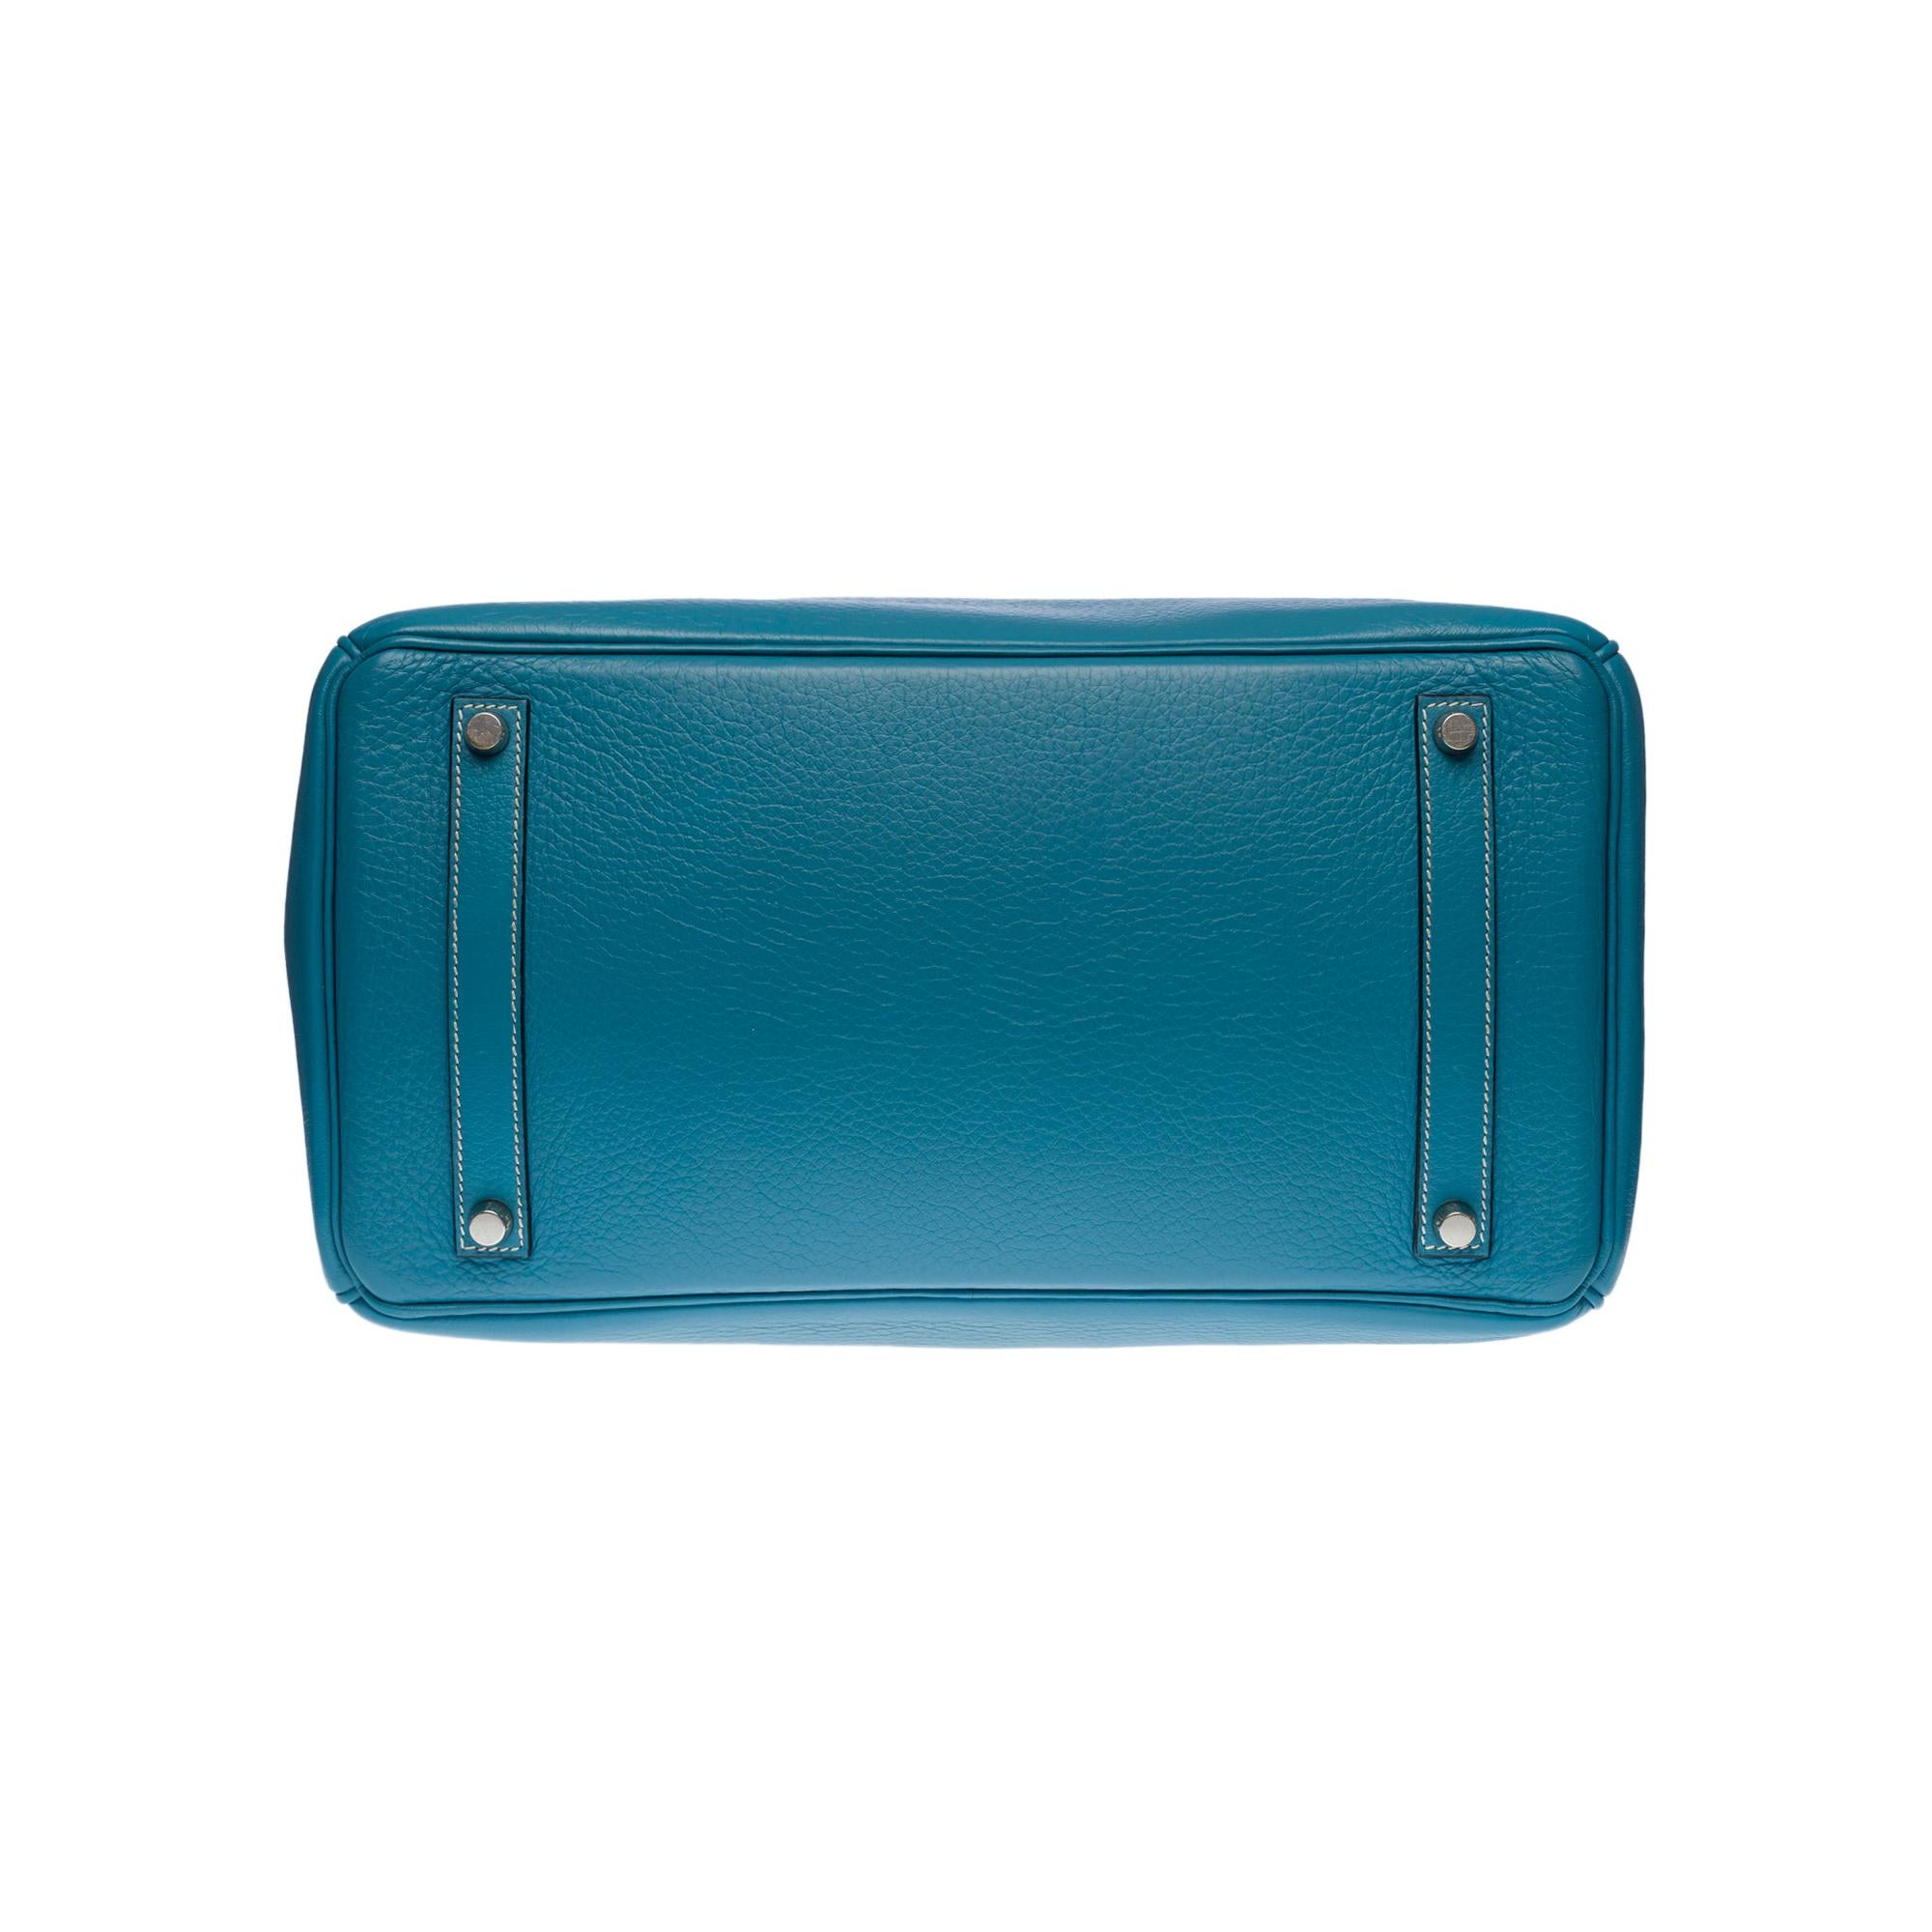 Stunning Hermes Birkin 40cm handbag in Blue Pétrole Togo leather, SHW 3